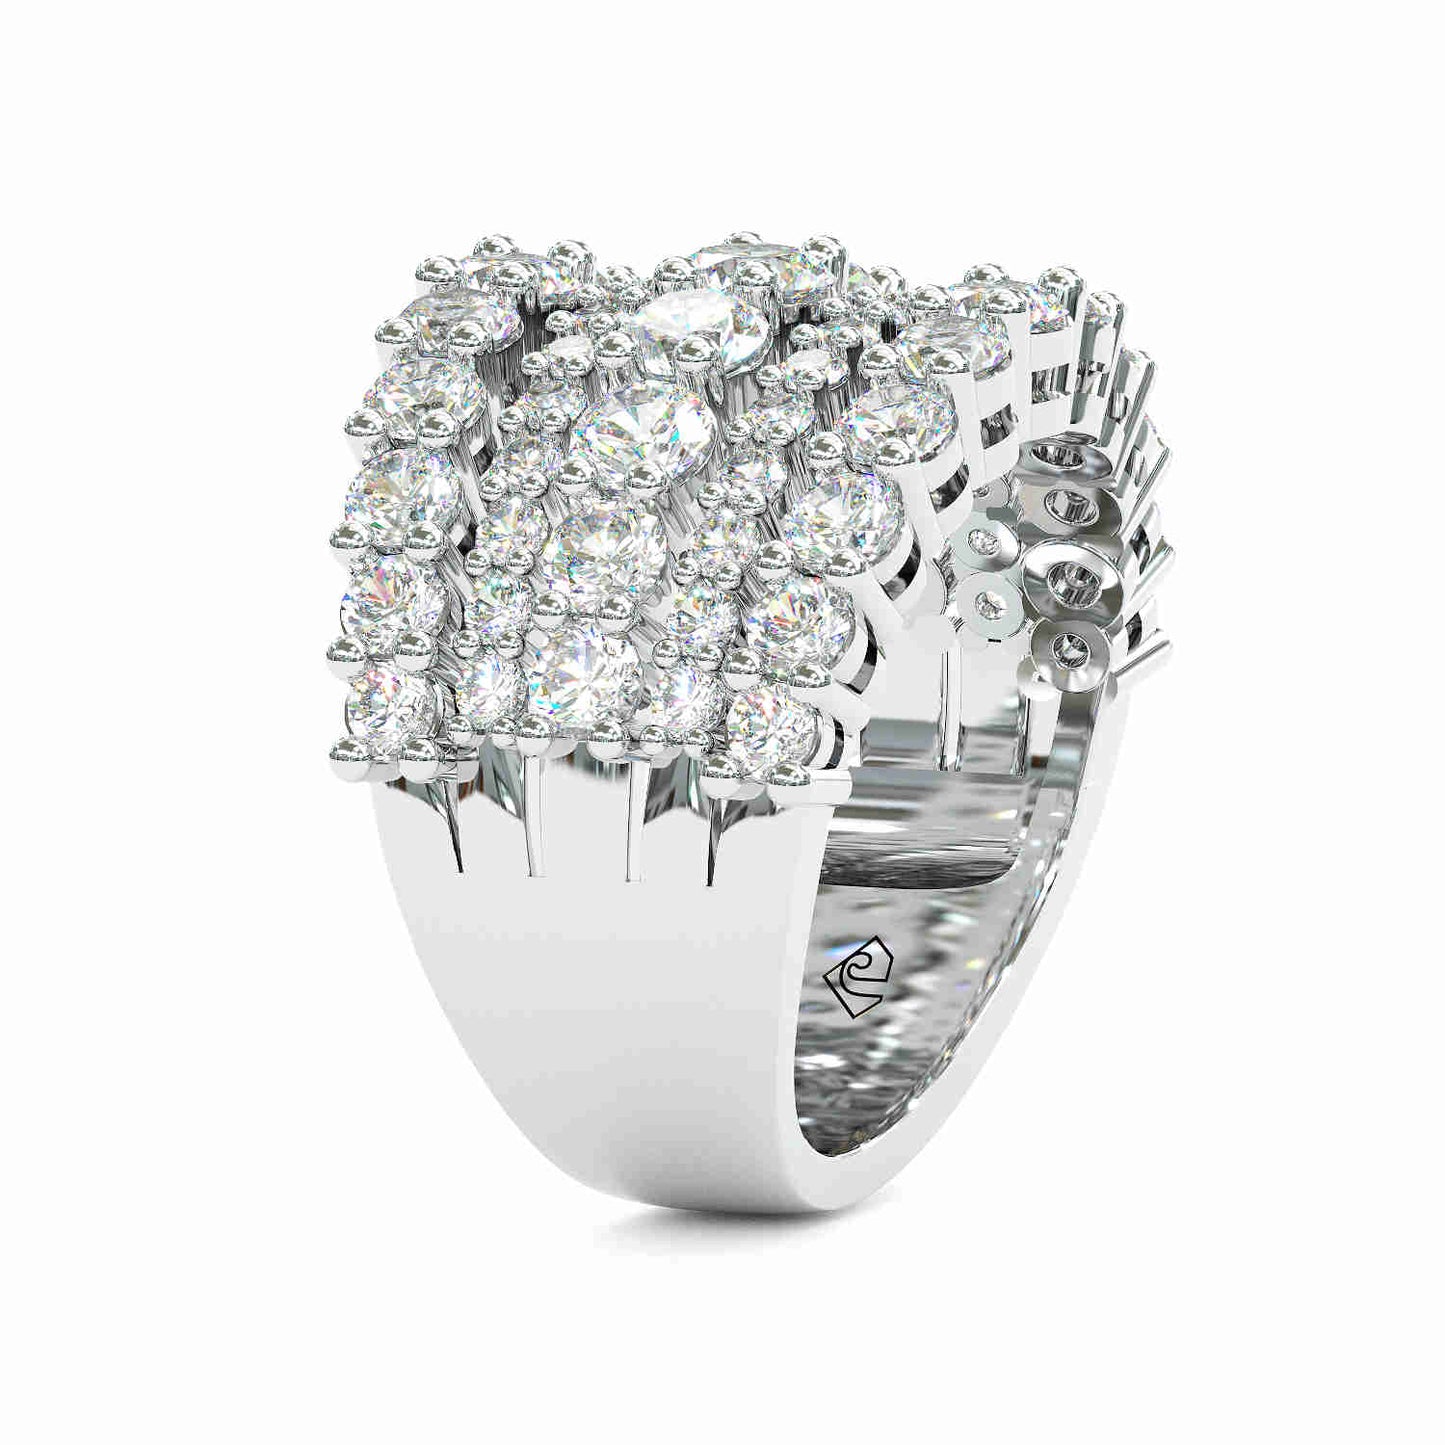 Jzora handmade created diamond round cut wedding ring women's band